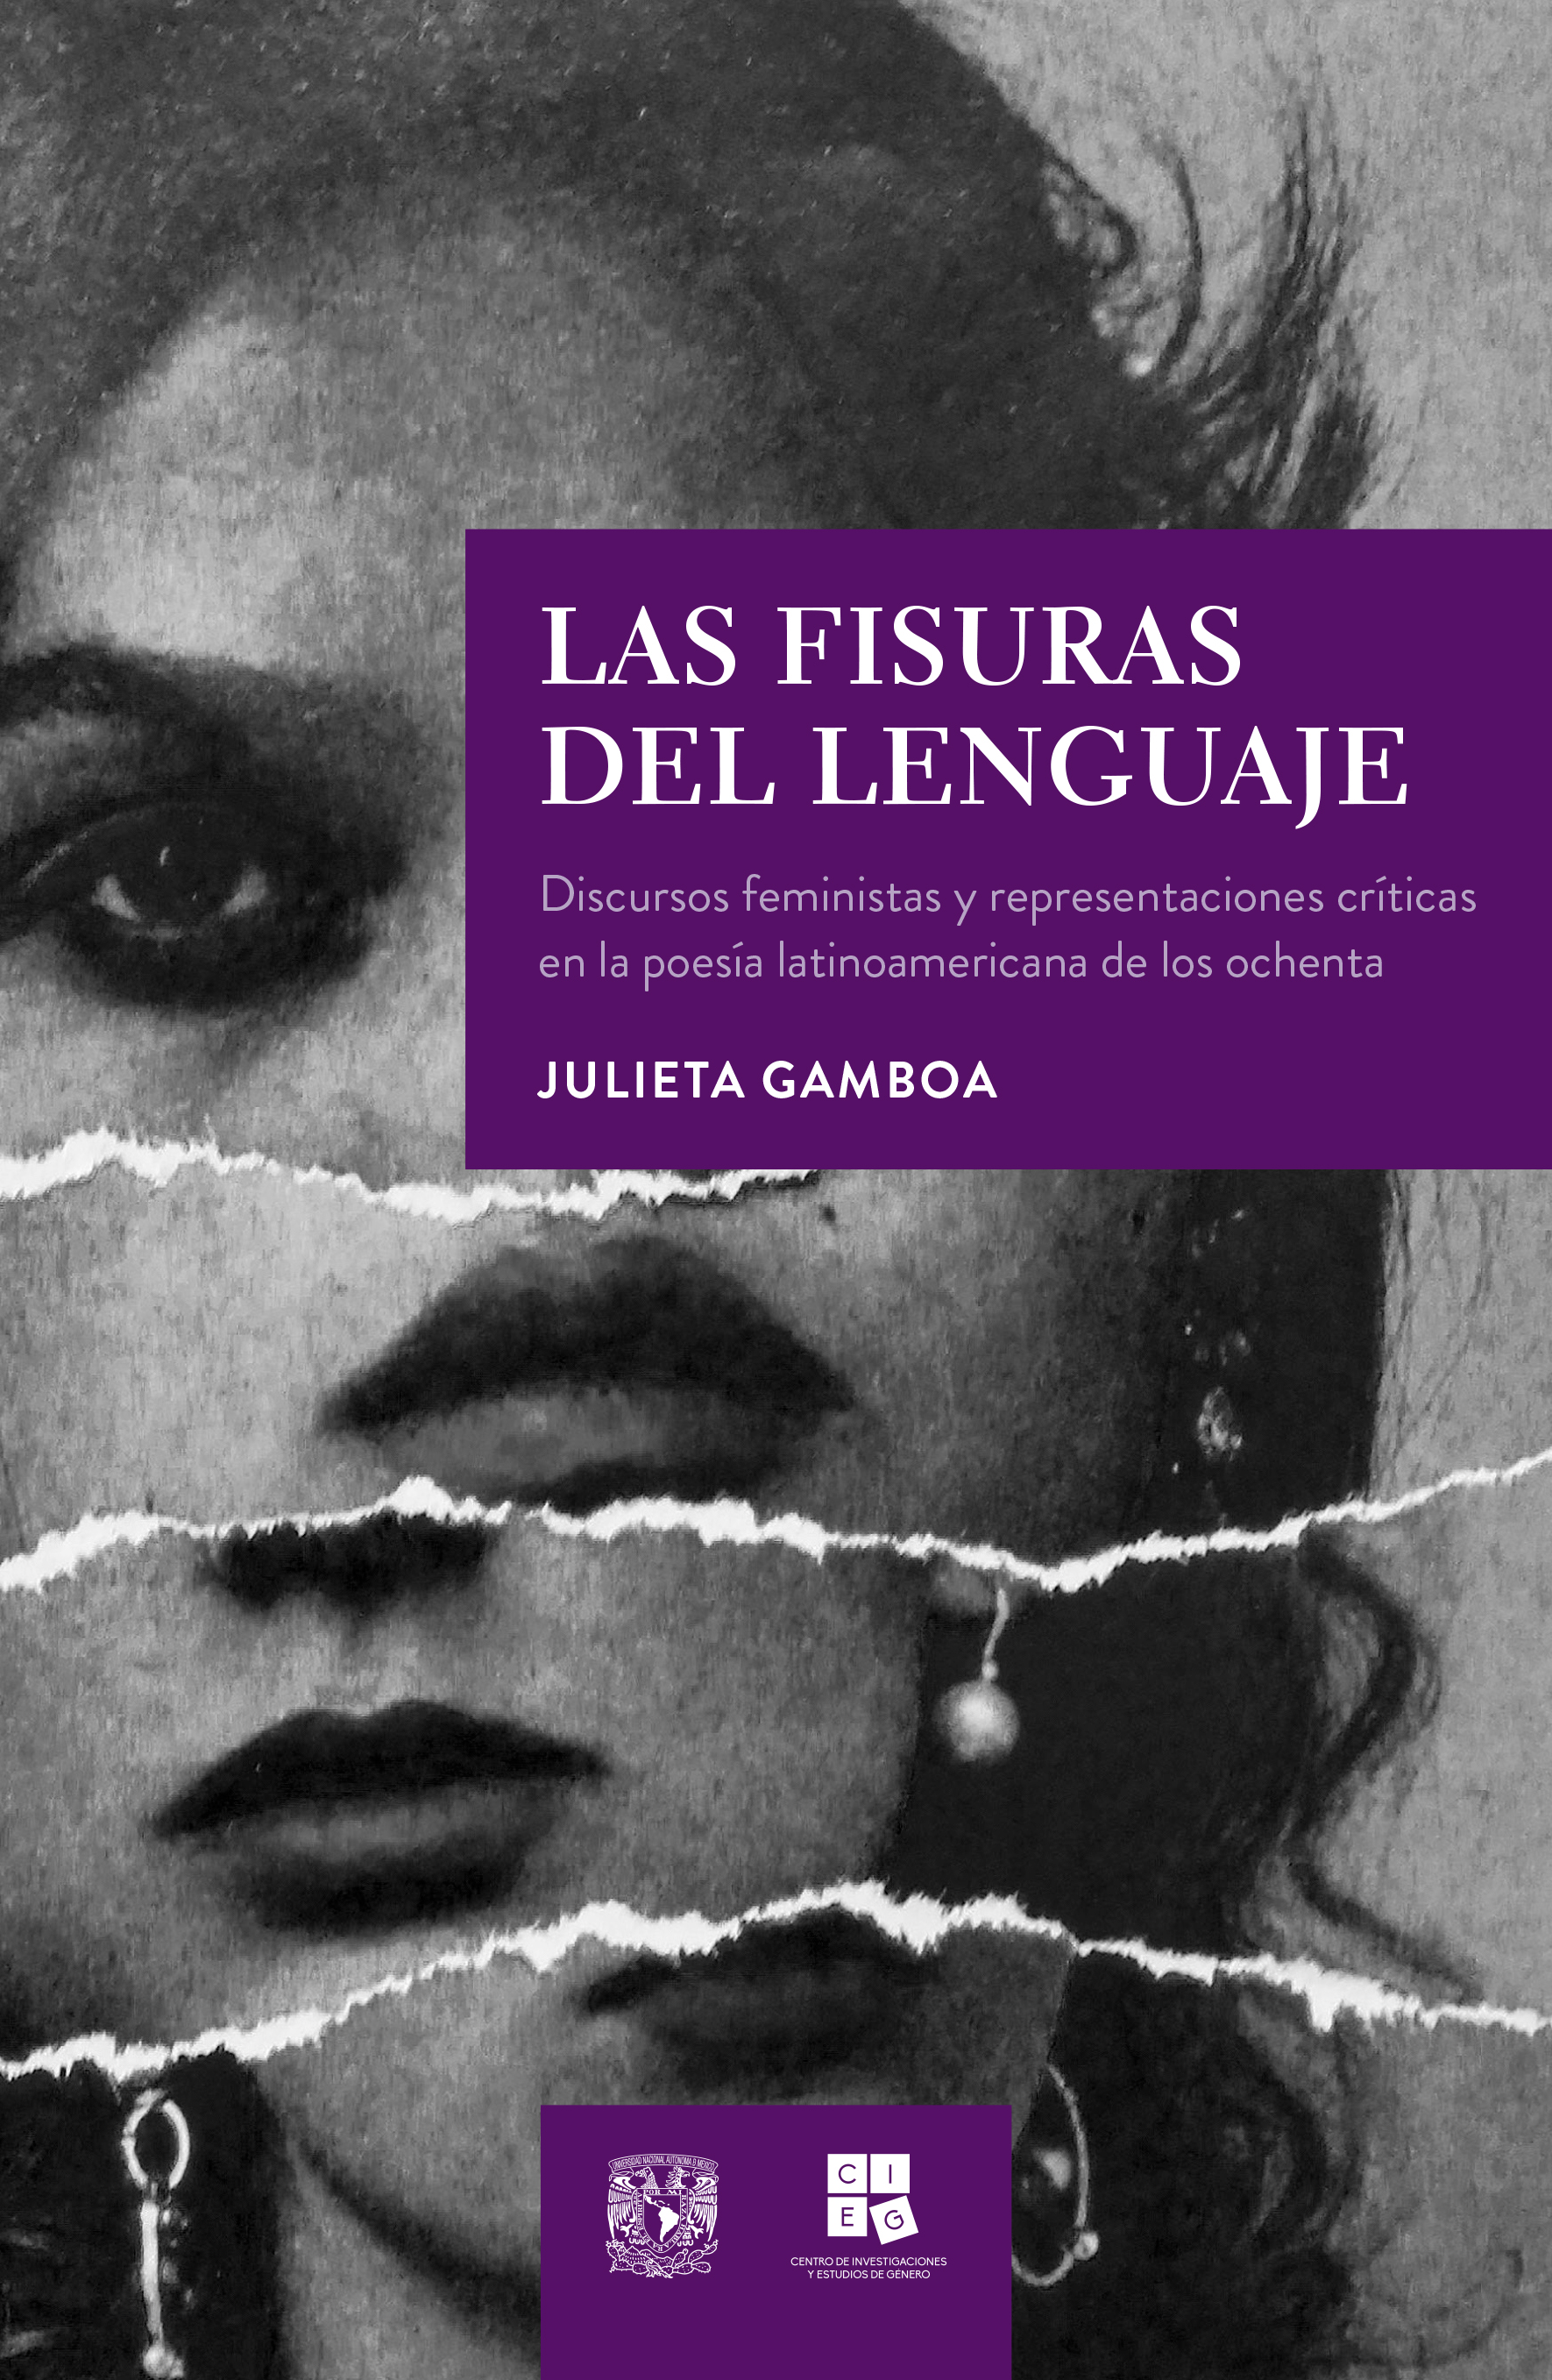 Las fisuras del lenguaje. Discursos feministas y representaciones críticas en la poesía latinoamericana de los ochenta Subtítulo Obra